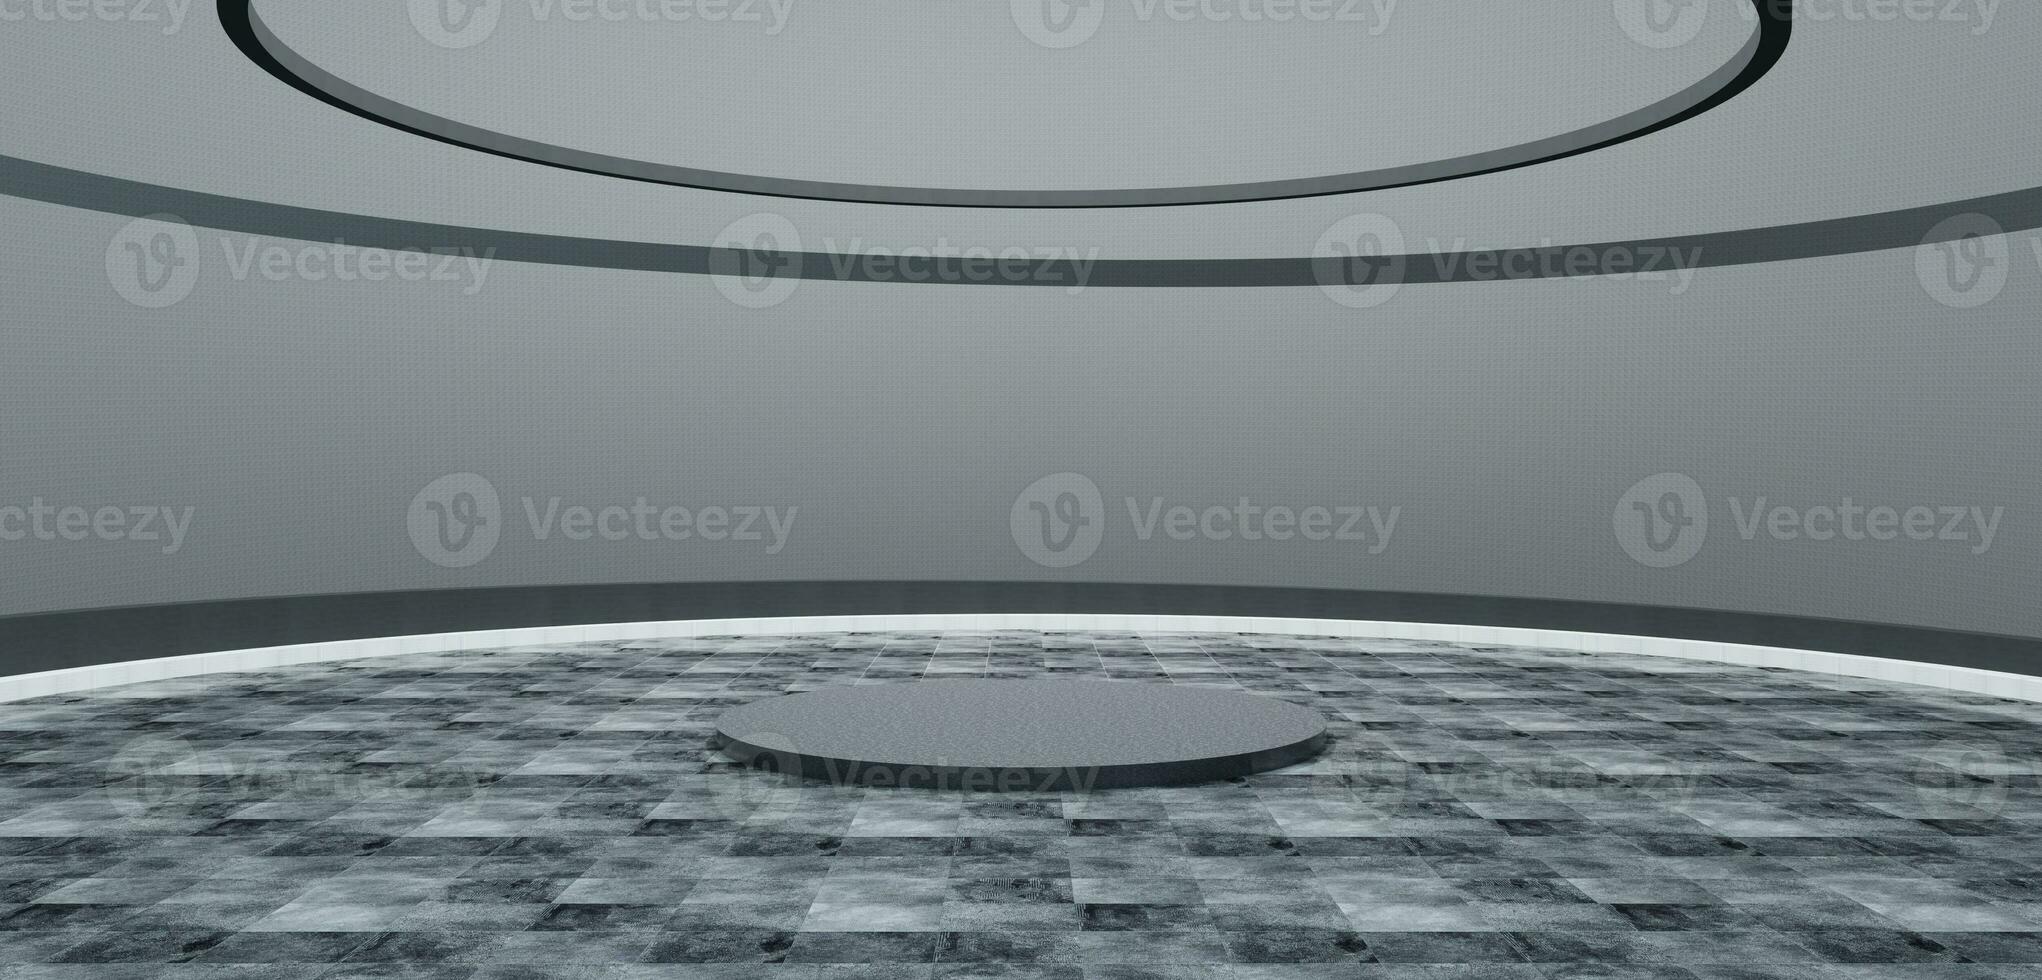 kromme vormig stadium circulaire kamer ronde podium ronde scherm gebogen koepel Super goed hal 3d illustratie foto